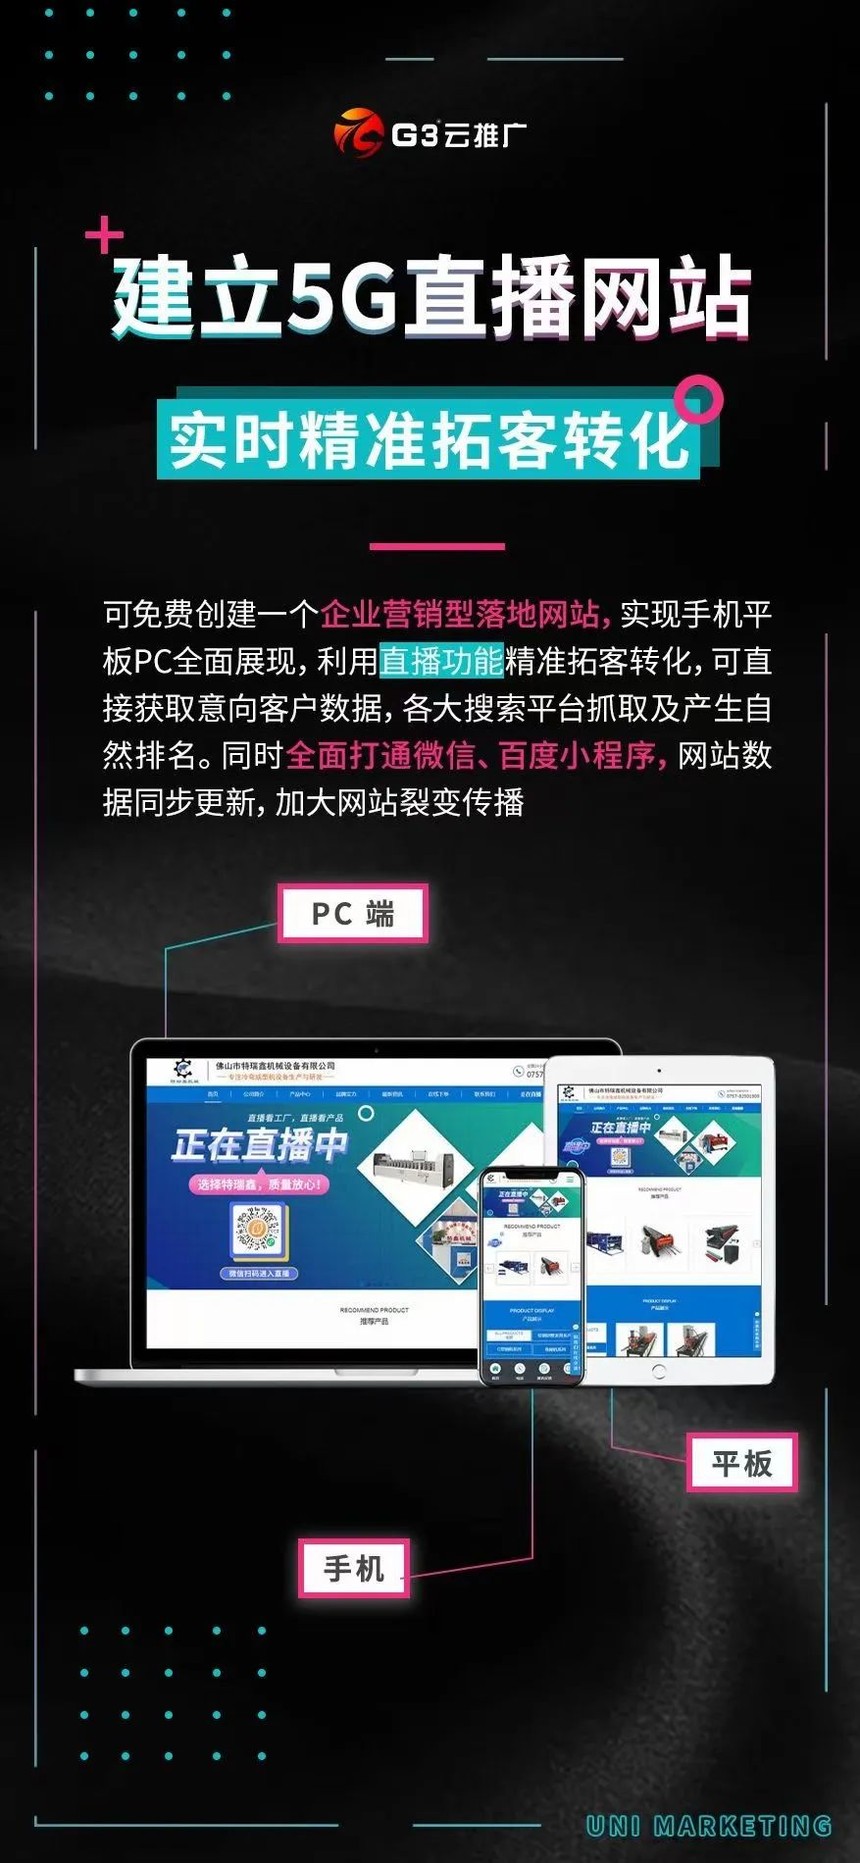 G3云推广如何帮助西安企业实现全网营销